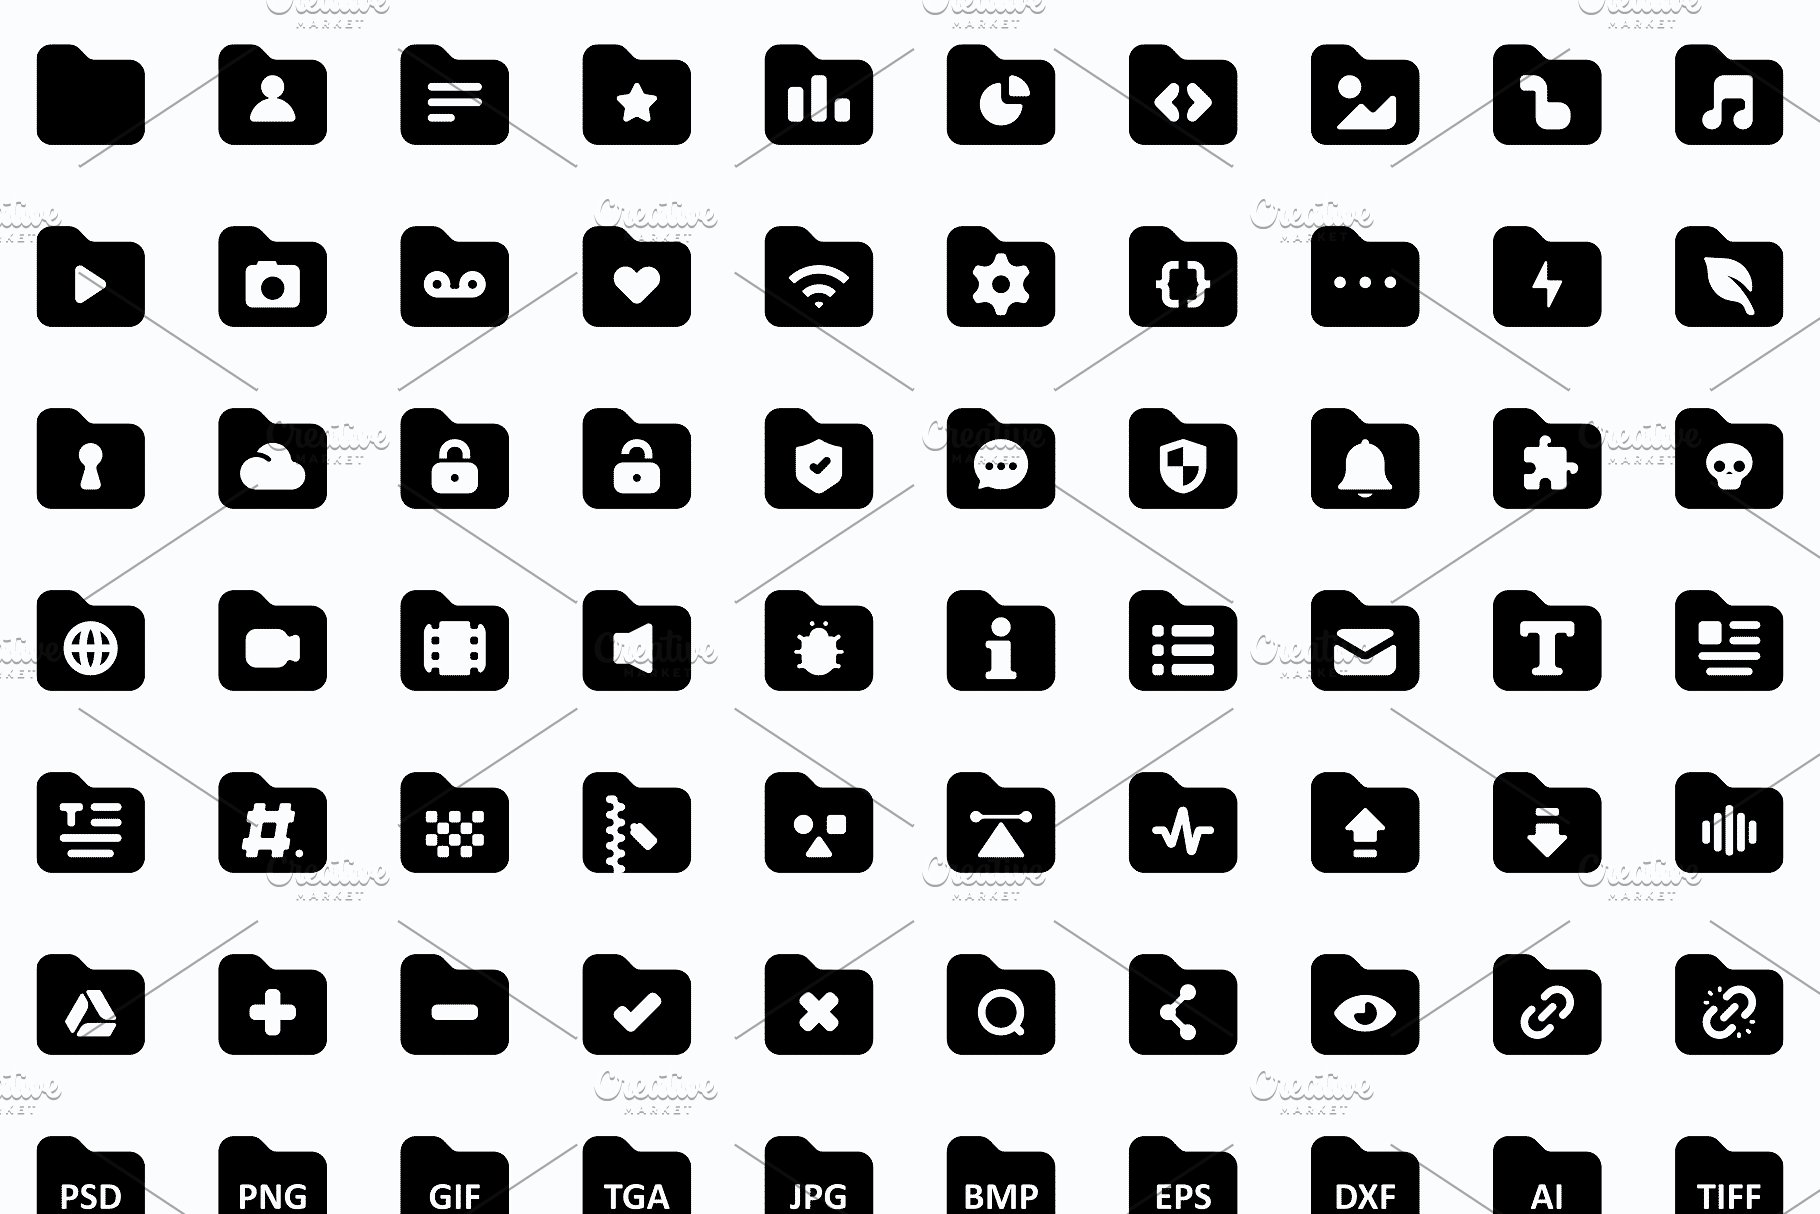 2200枚圆形实心图标 Roundies 2200 Solid Icons插图(12)